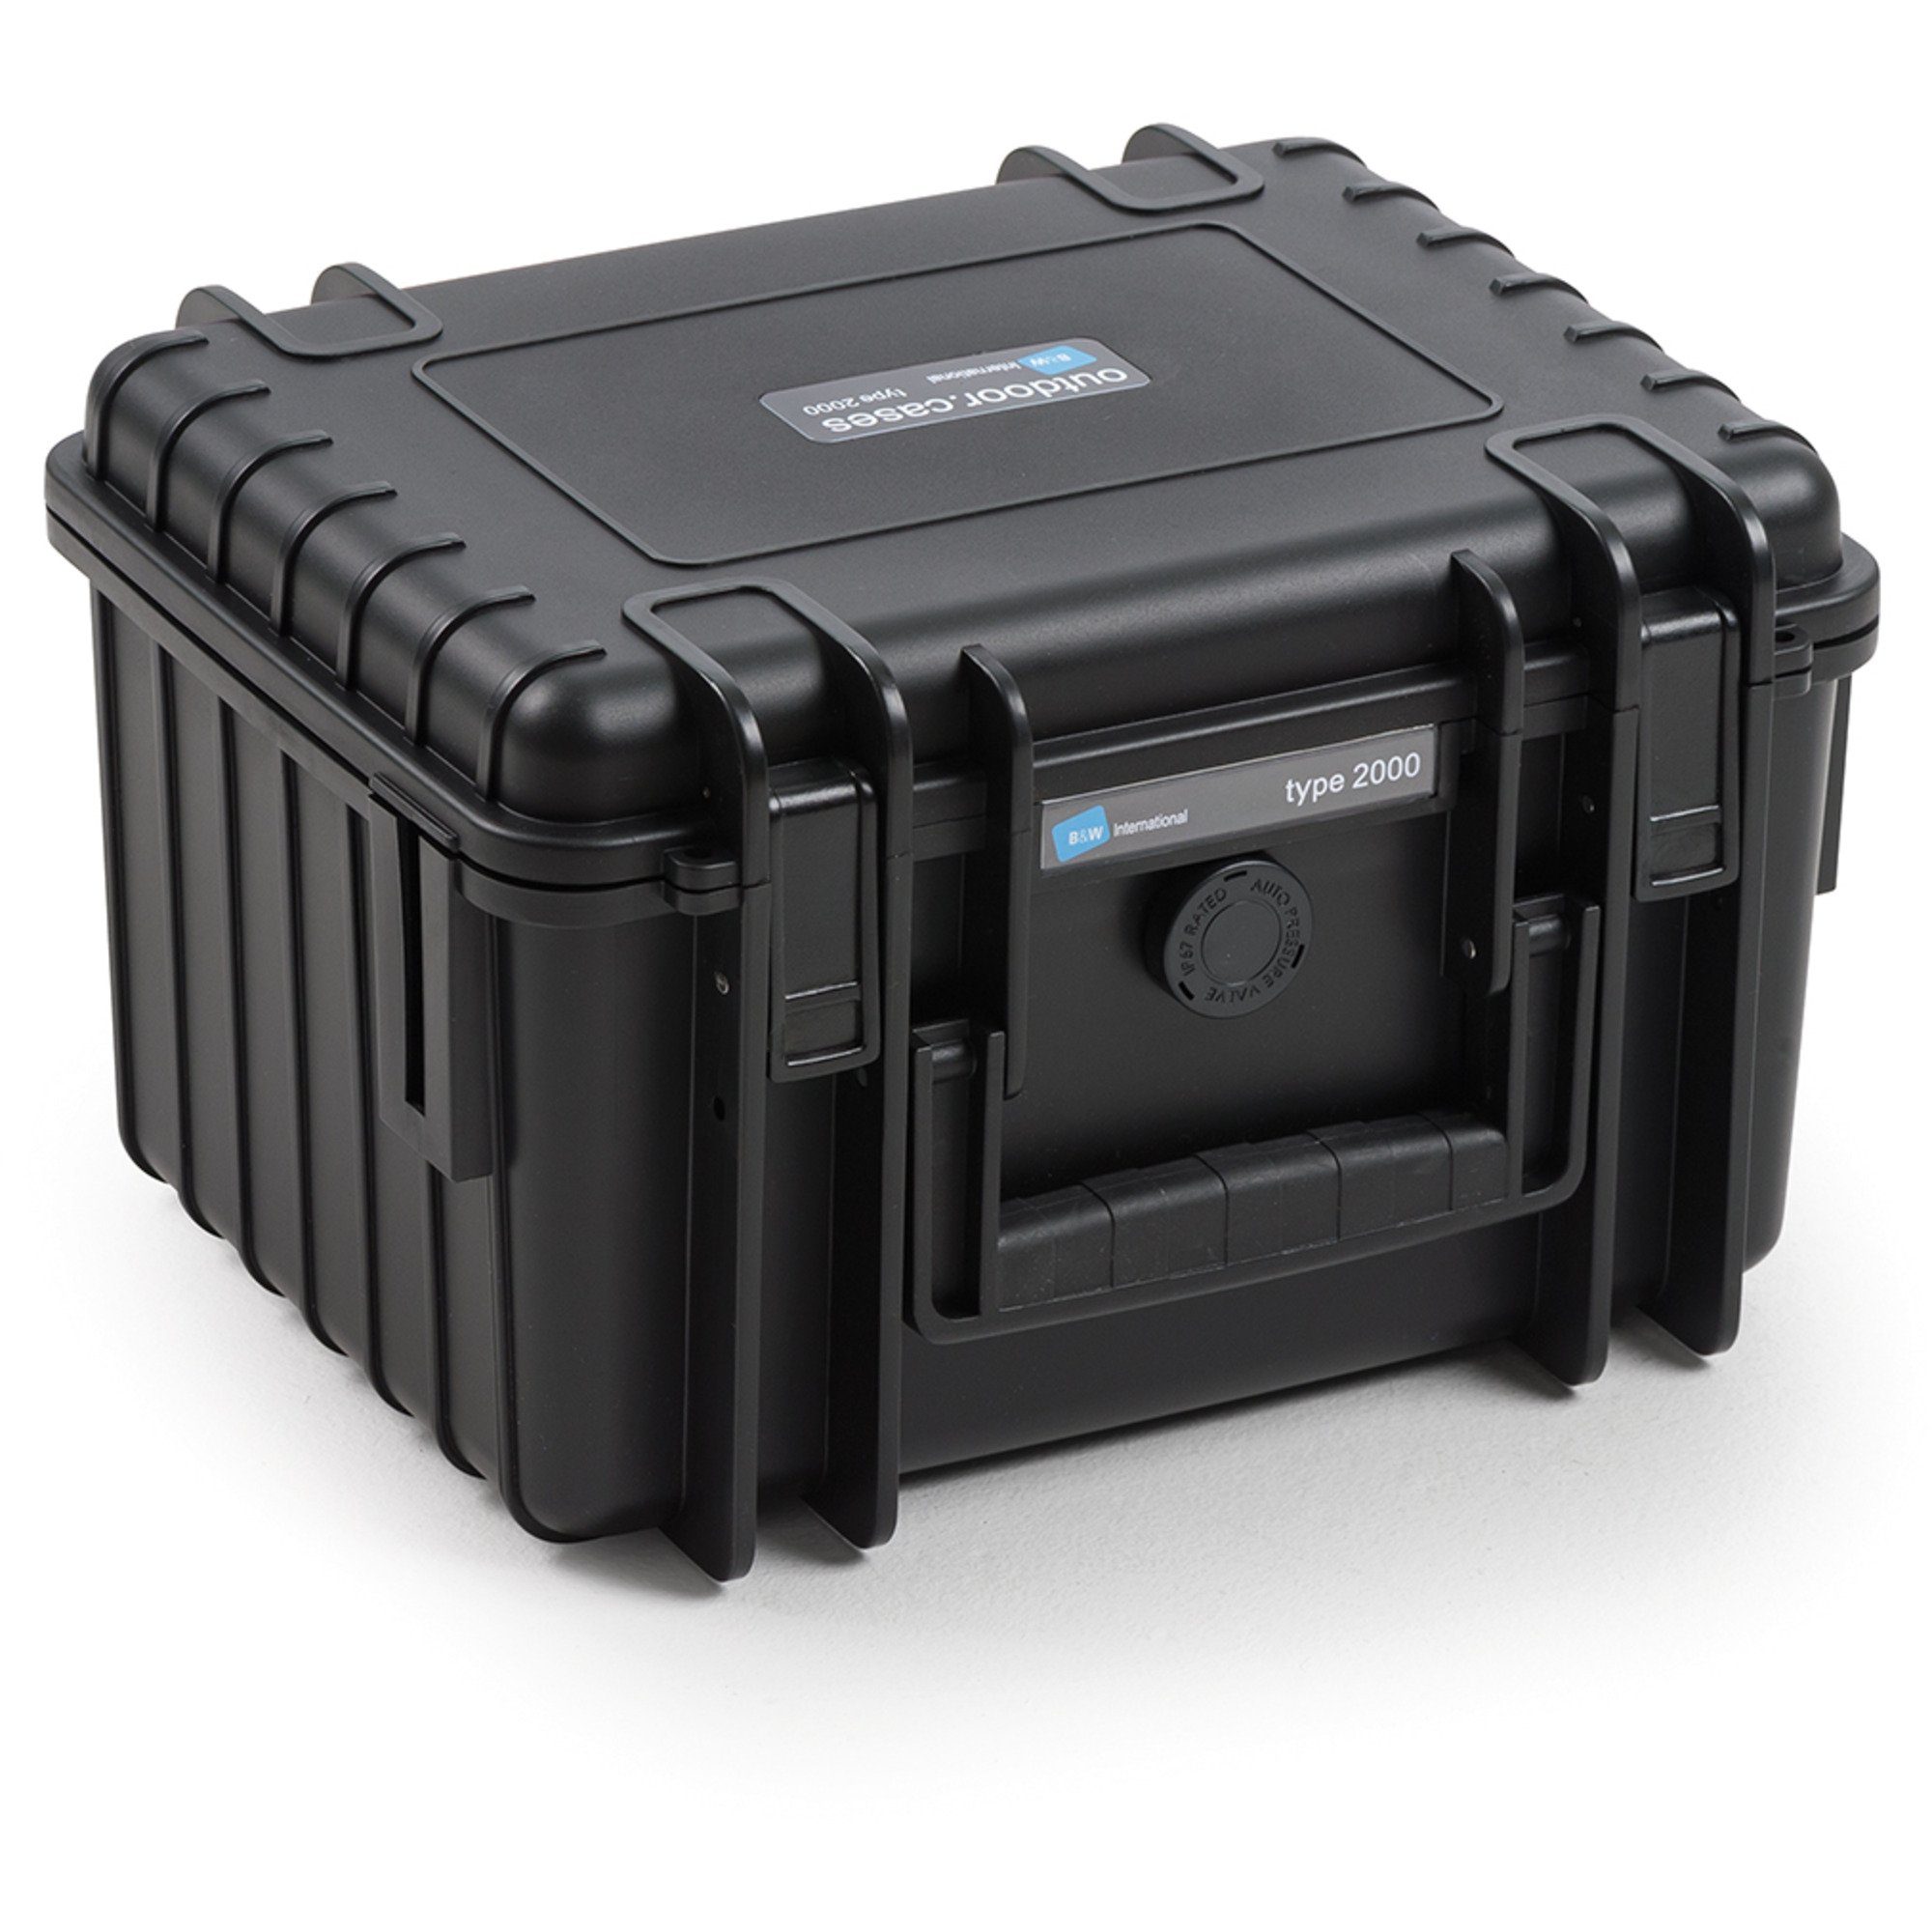 Typ outdoor B&W B&W Koffer Mini Aufbewahrungstasche 2000 Case DJI Pro, 3